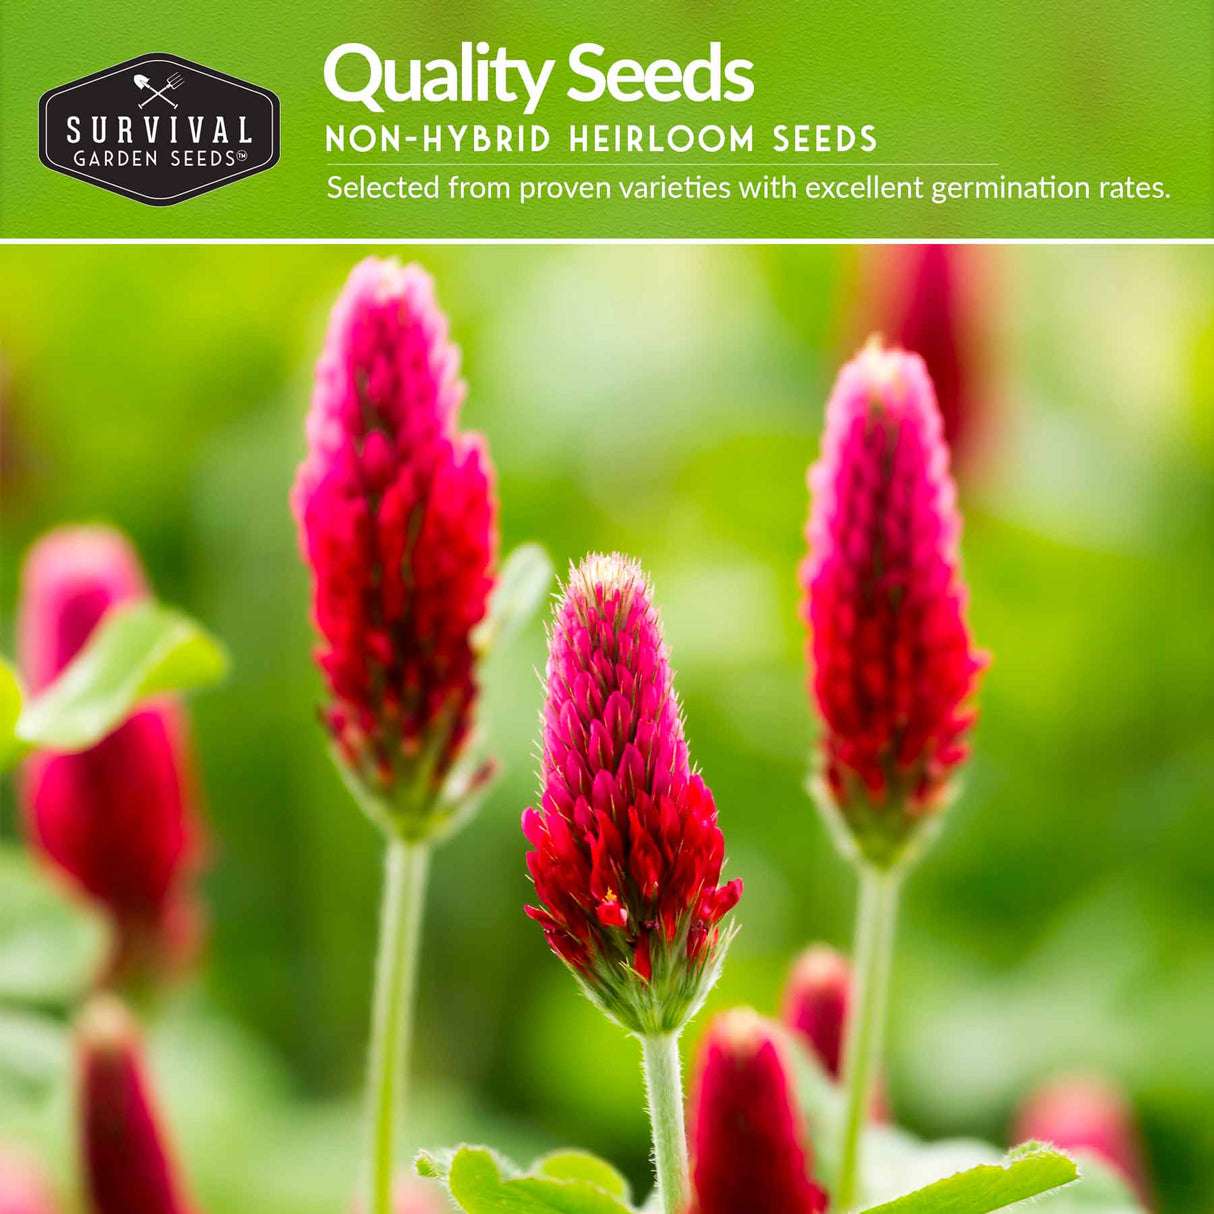 Quailty non-hybrid heirloom seeds